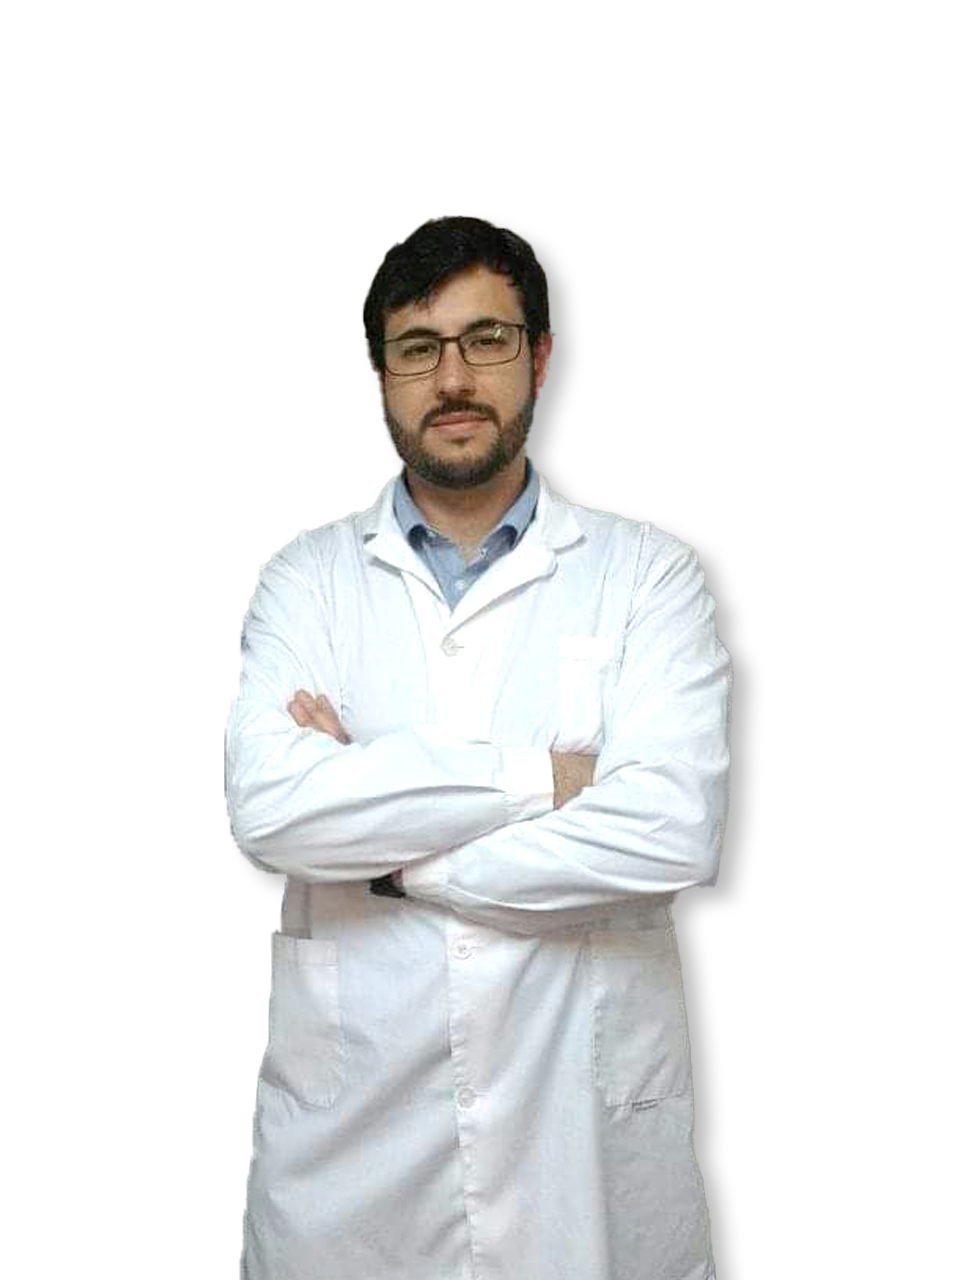 Dr. Moreira, Martin